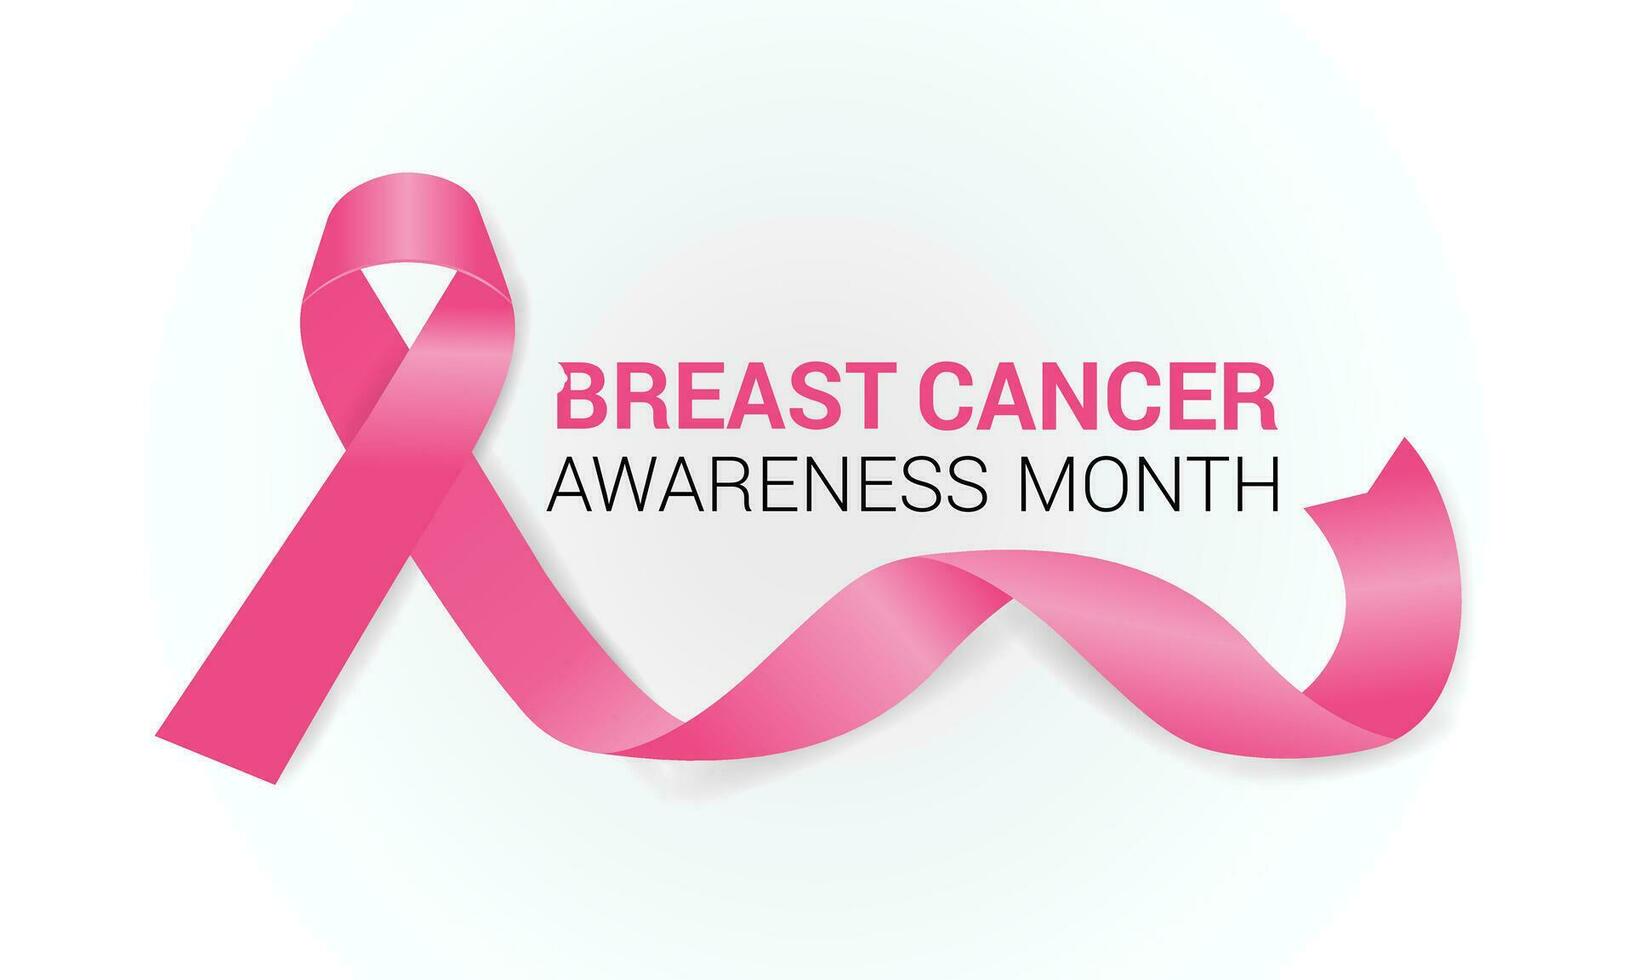 bröst cancer medvetenhet månad är observerats varje år i oktober. baner, affisch, kort, bakgrund design. vektor